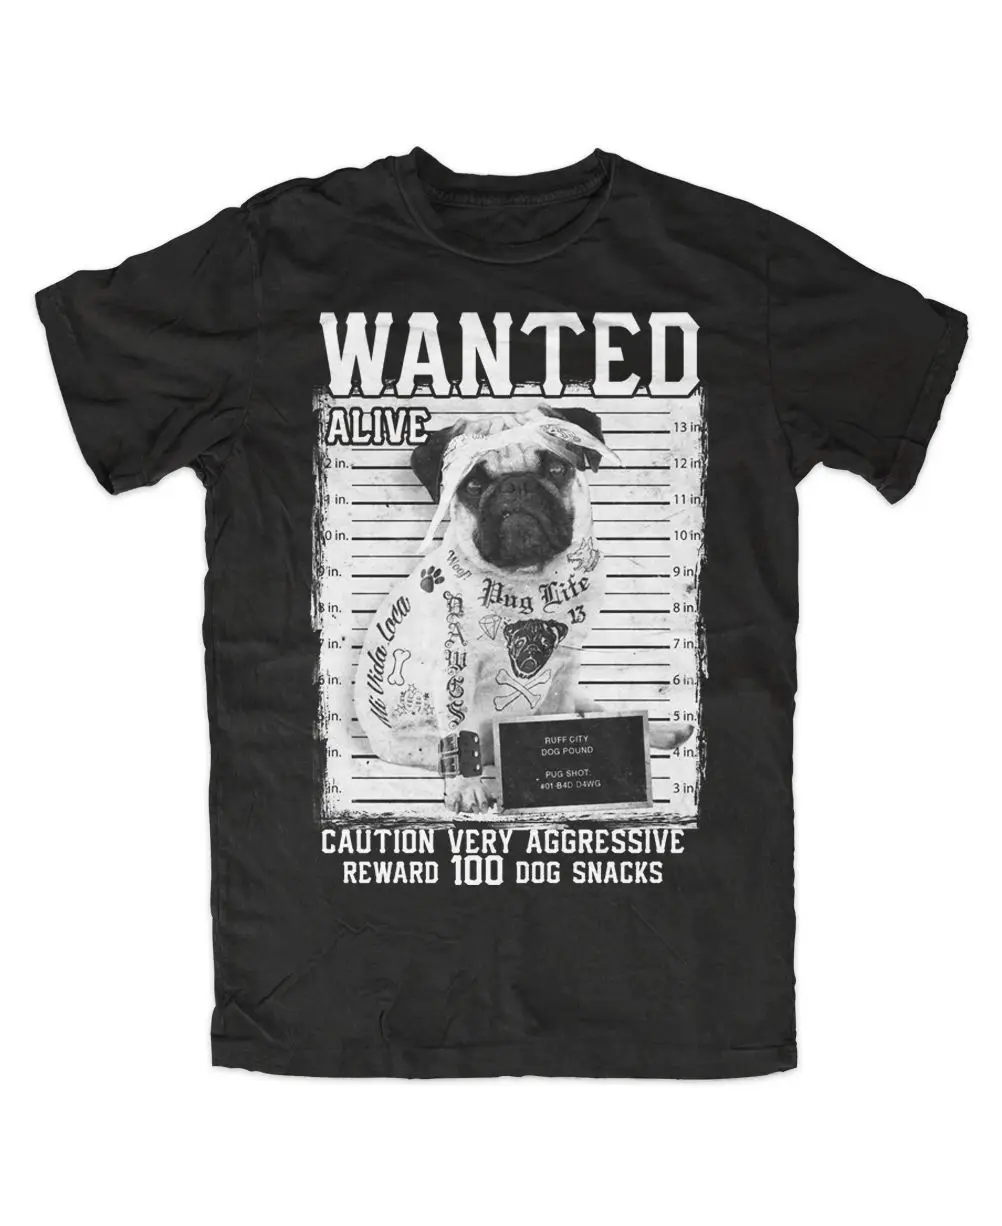 

Брендовая футболка, хлопковая одежда, новинка, футболка с надписью Bad Dog Want, черная, Швабра, хунд, тату, рокабилли, хипстер, стильные рубашки с ...